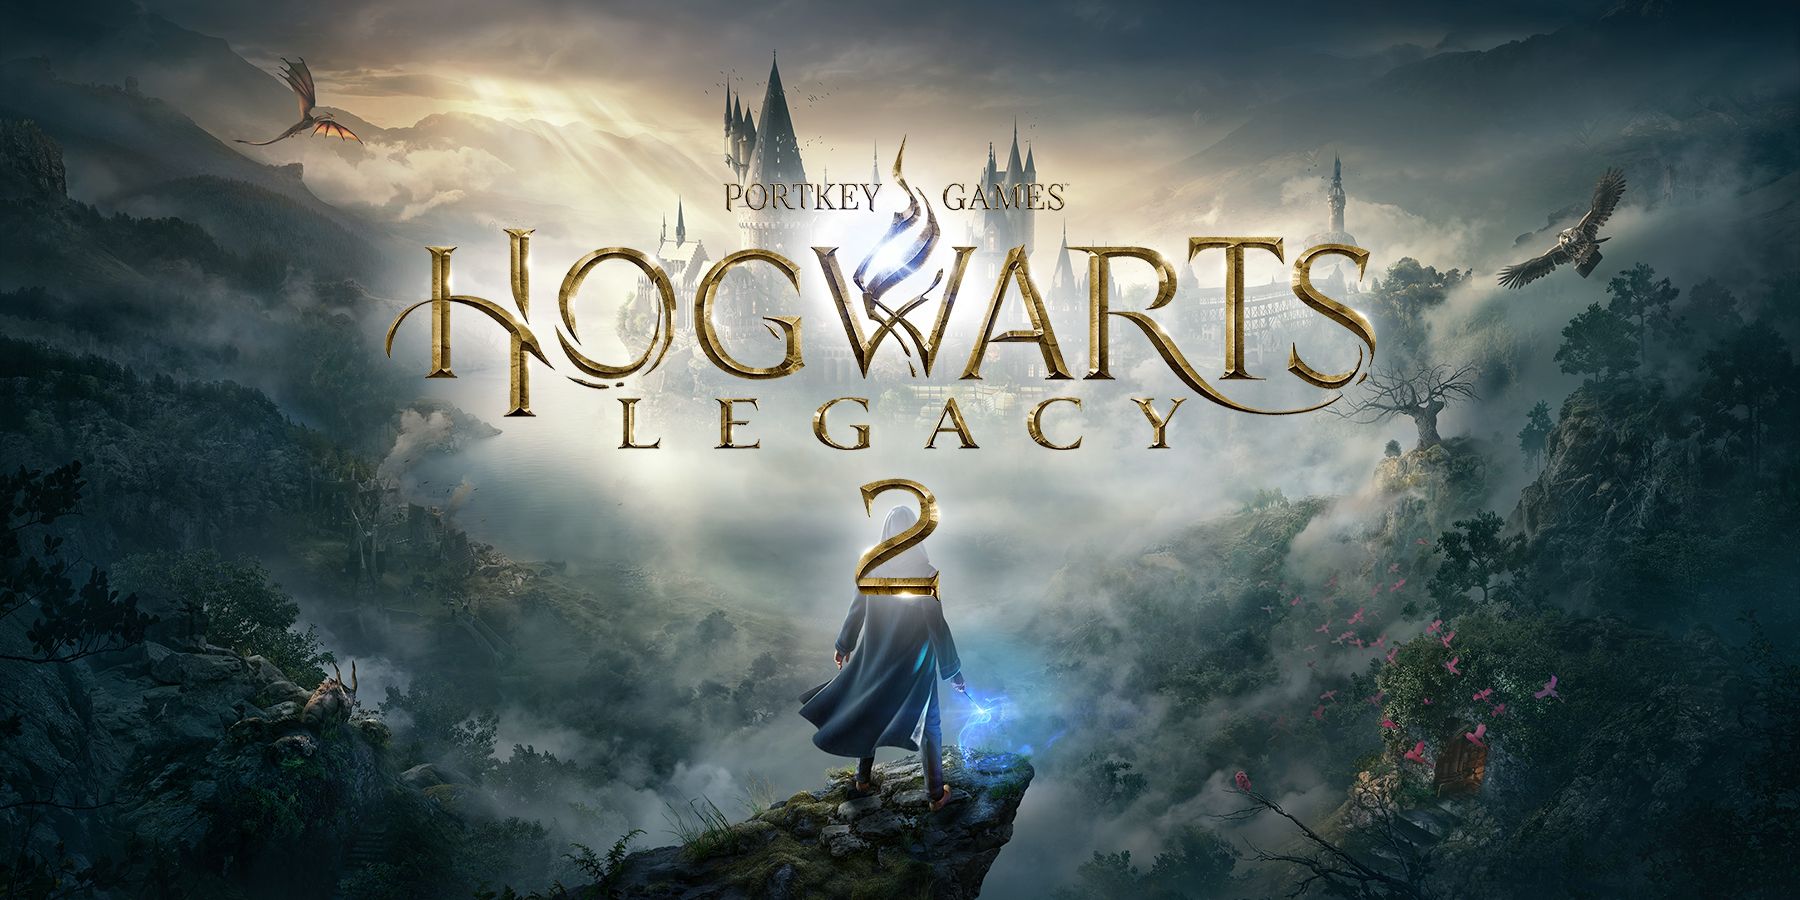 Hogwarts Legacy 2 fake logo over Hogwarts Legacy key art